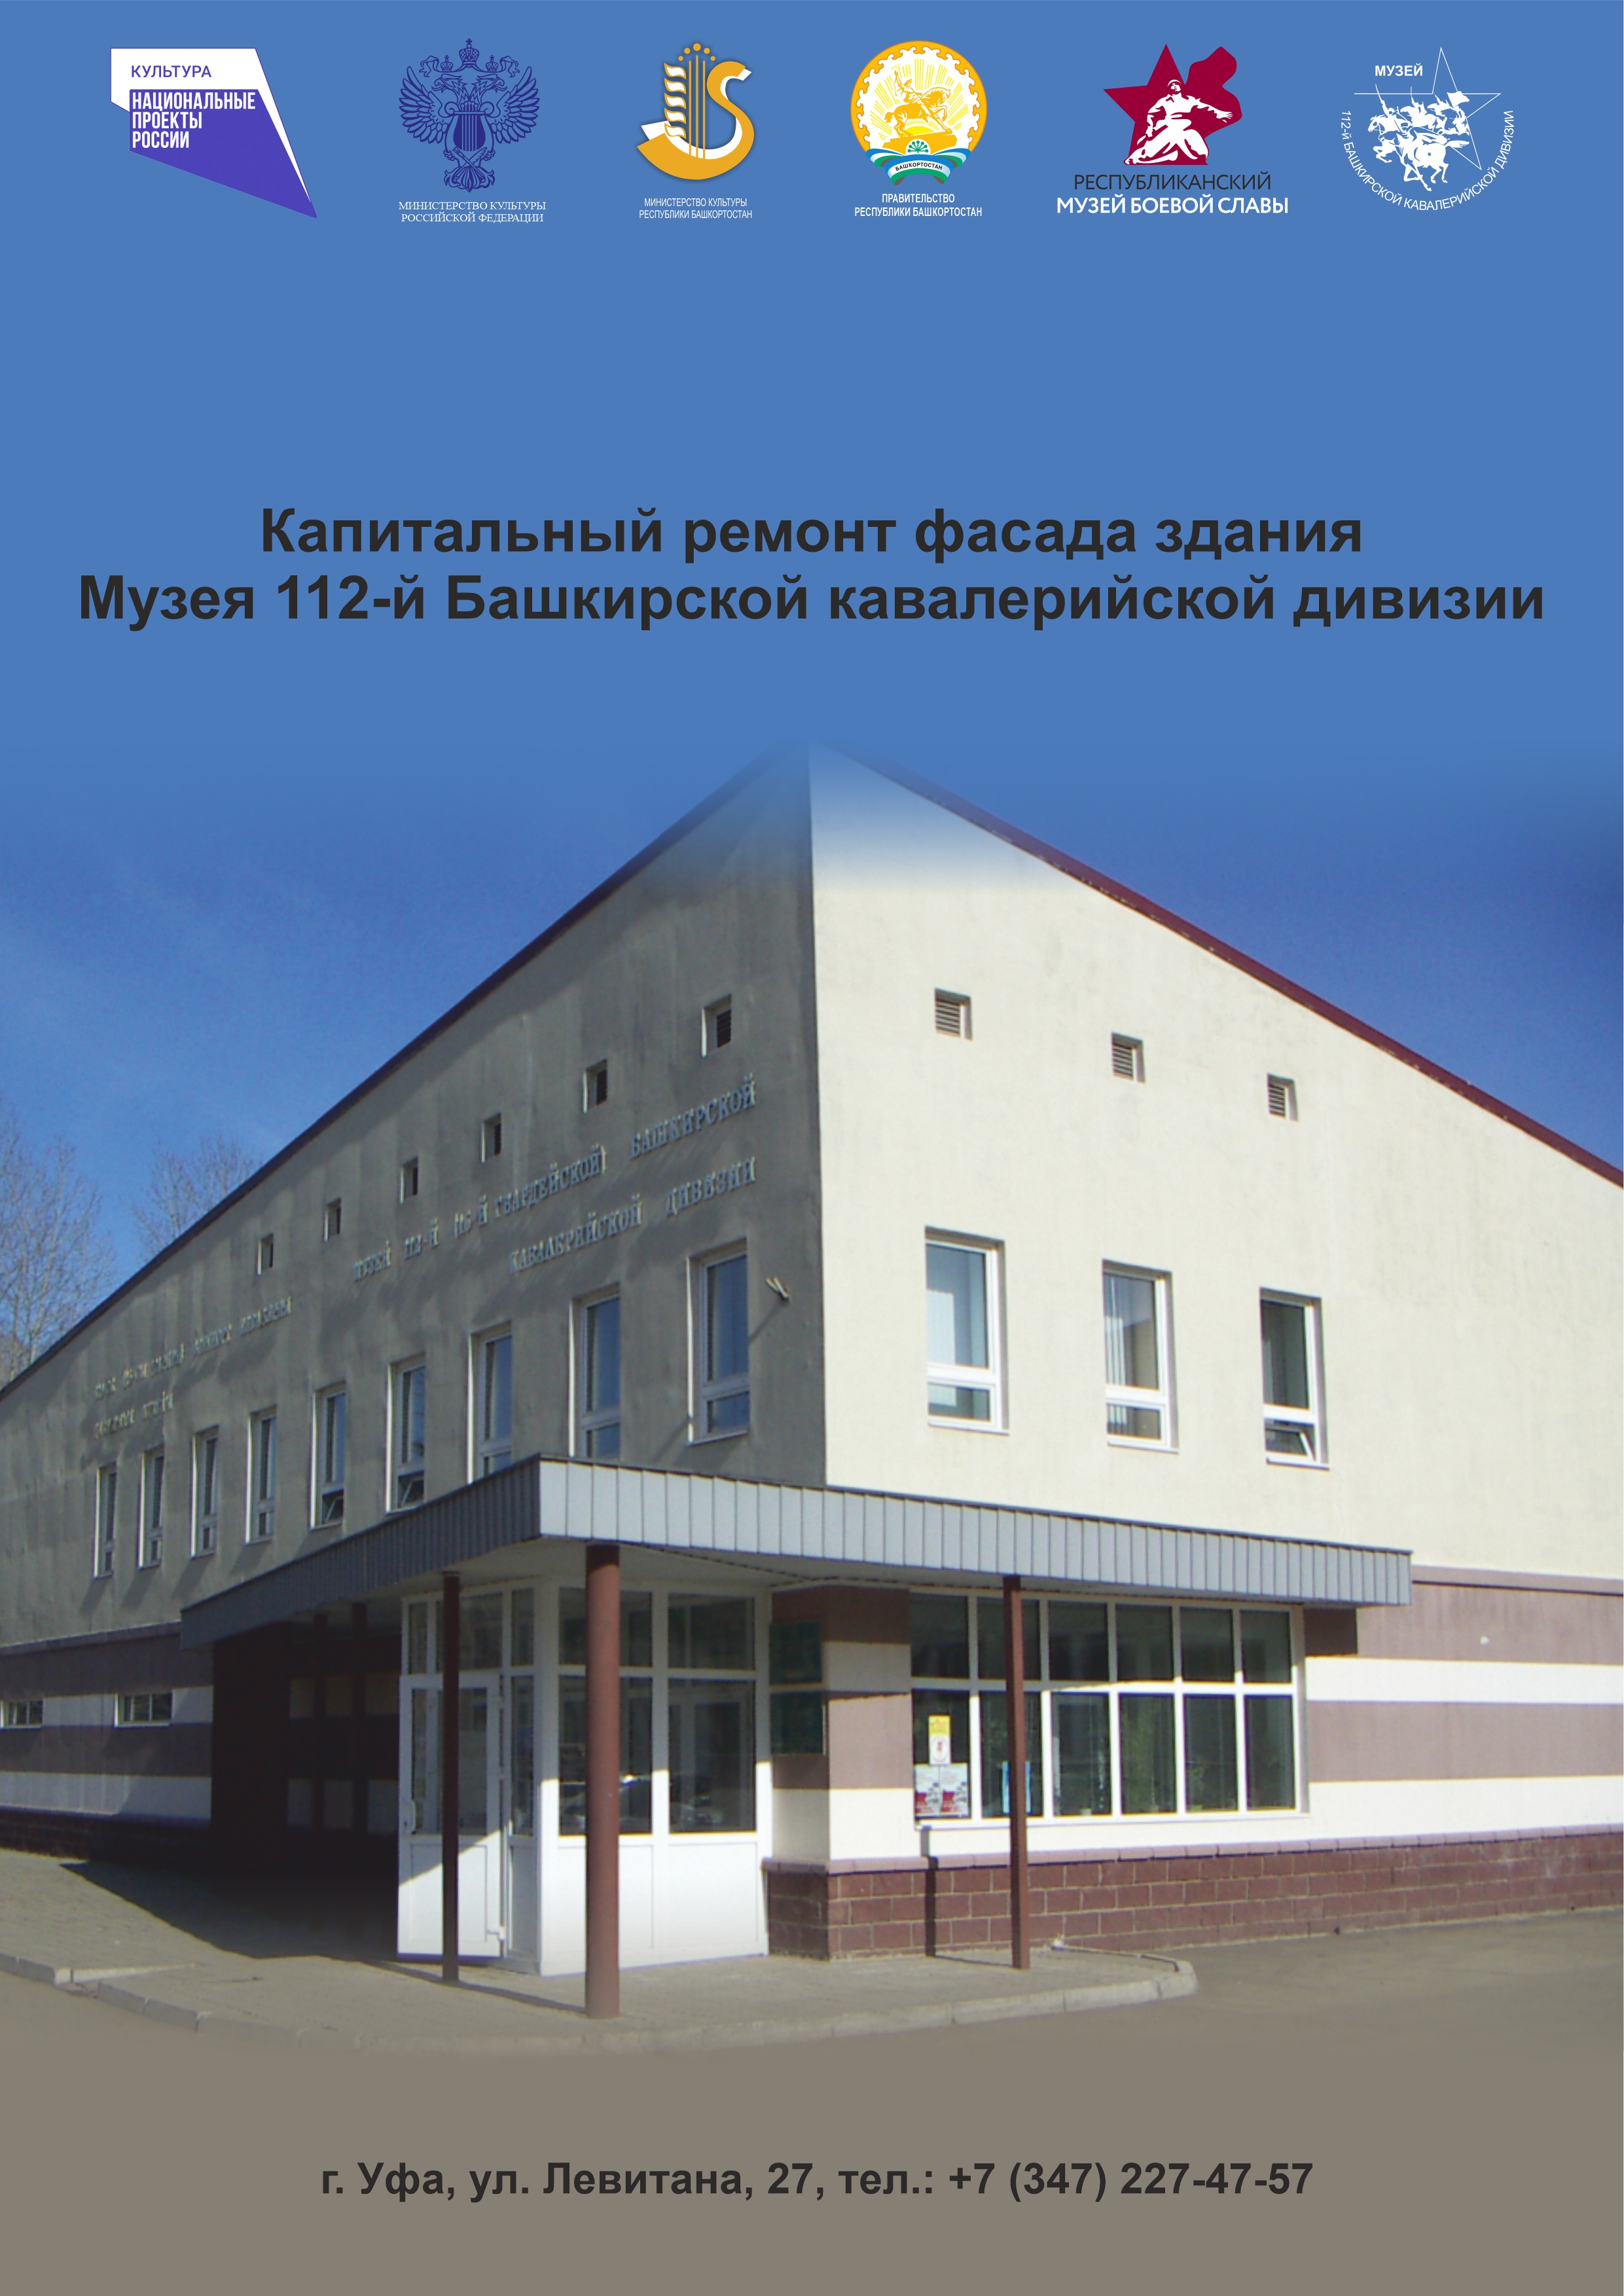 Капитальный ремонт фасада здания Музея 112-й Башкирской кавалерийской дивизии